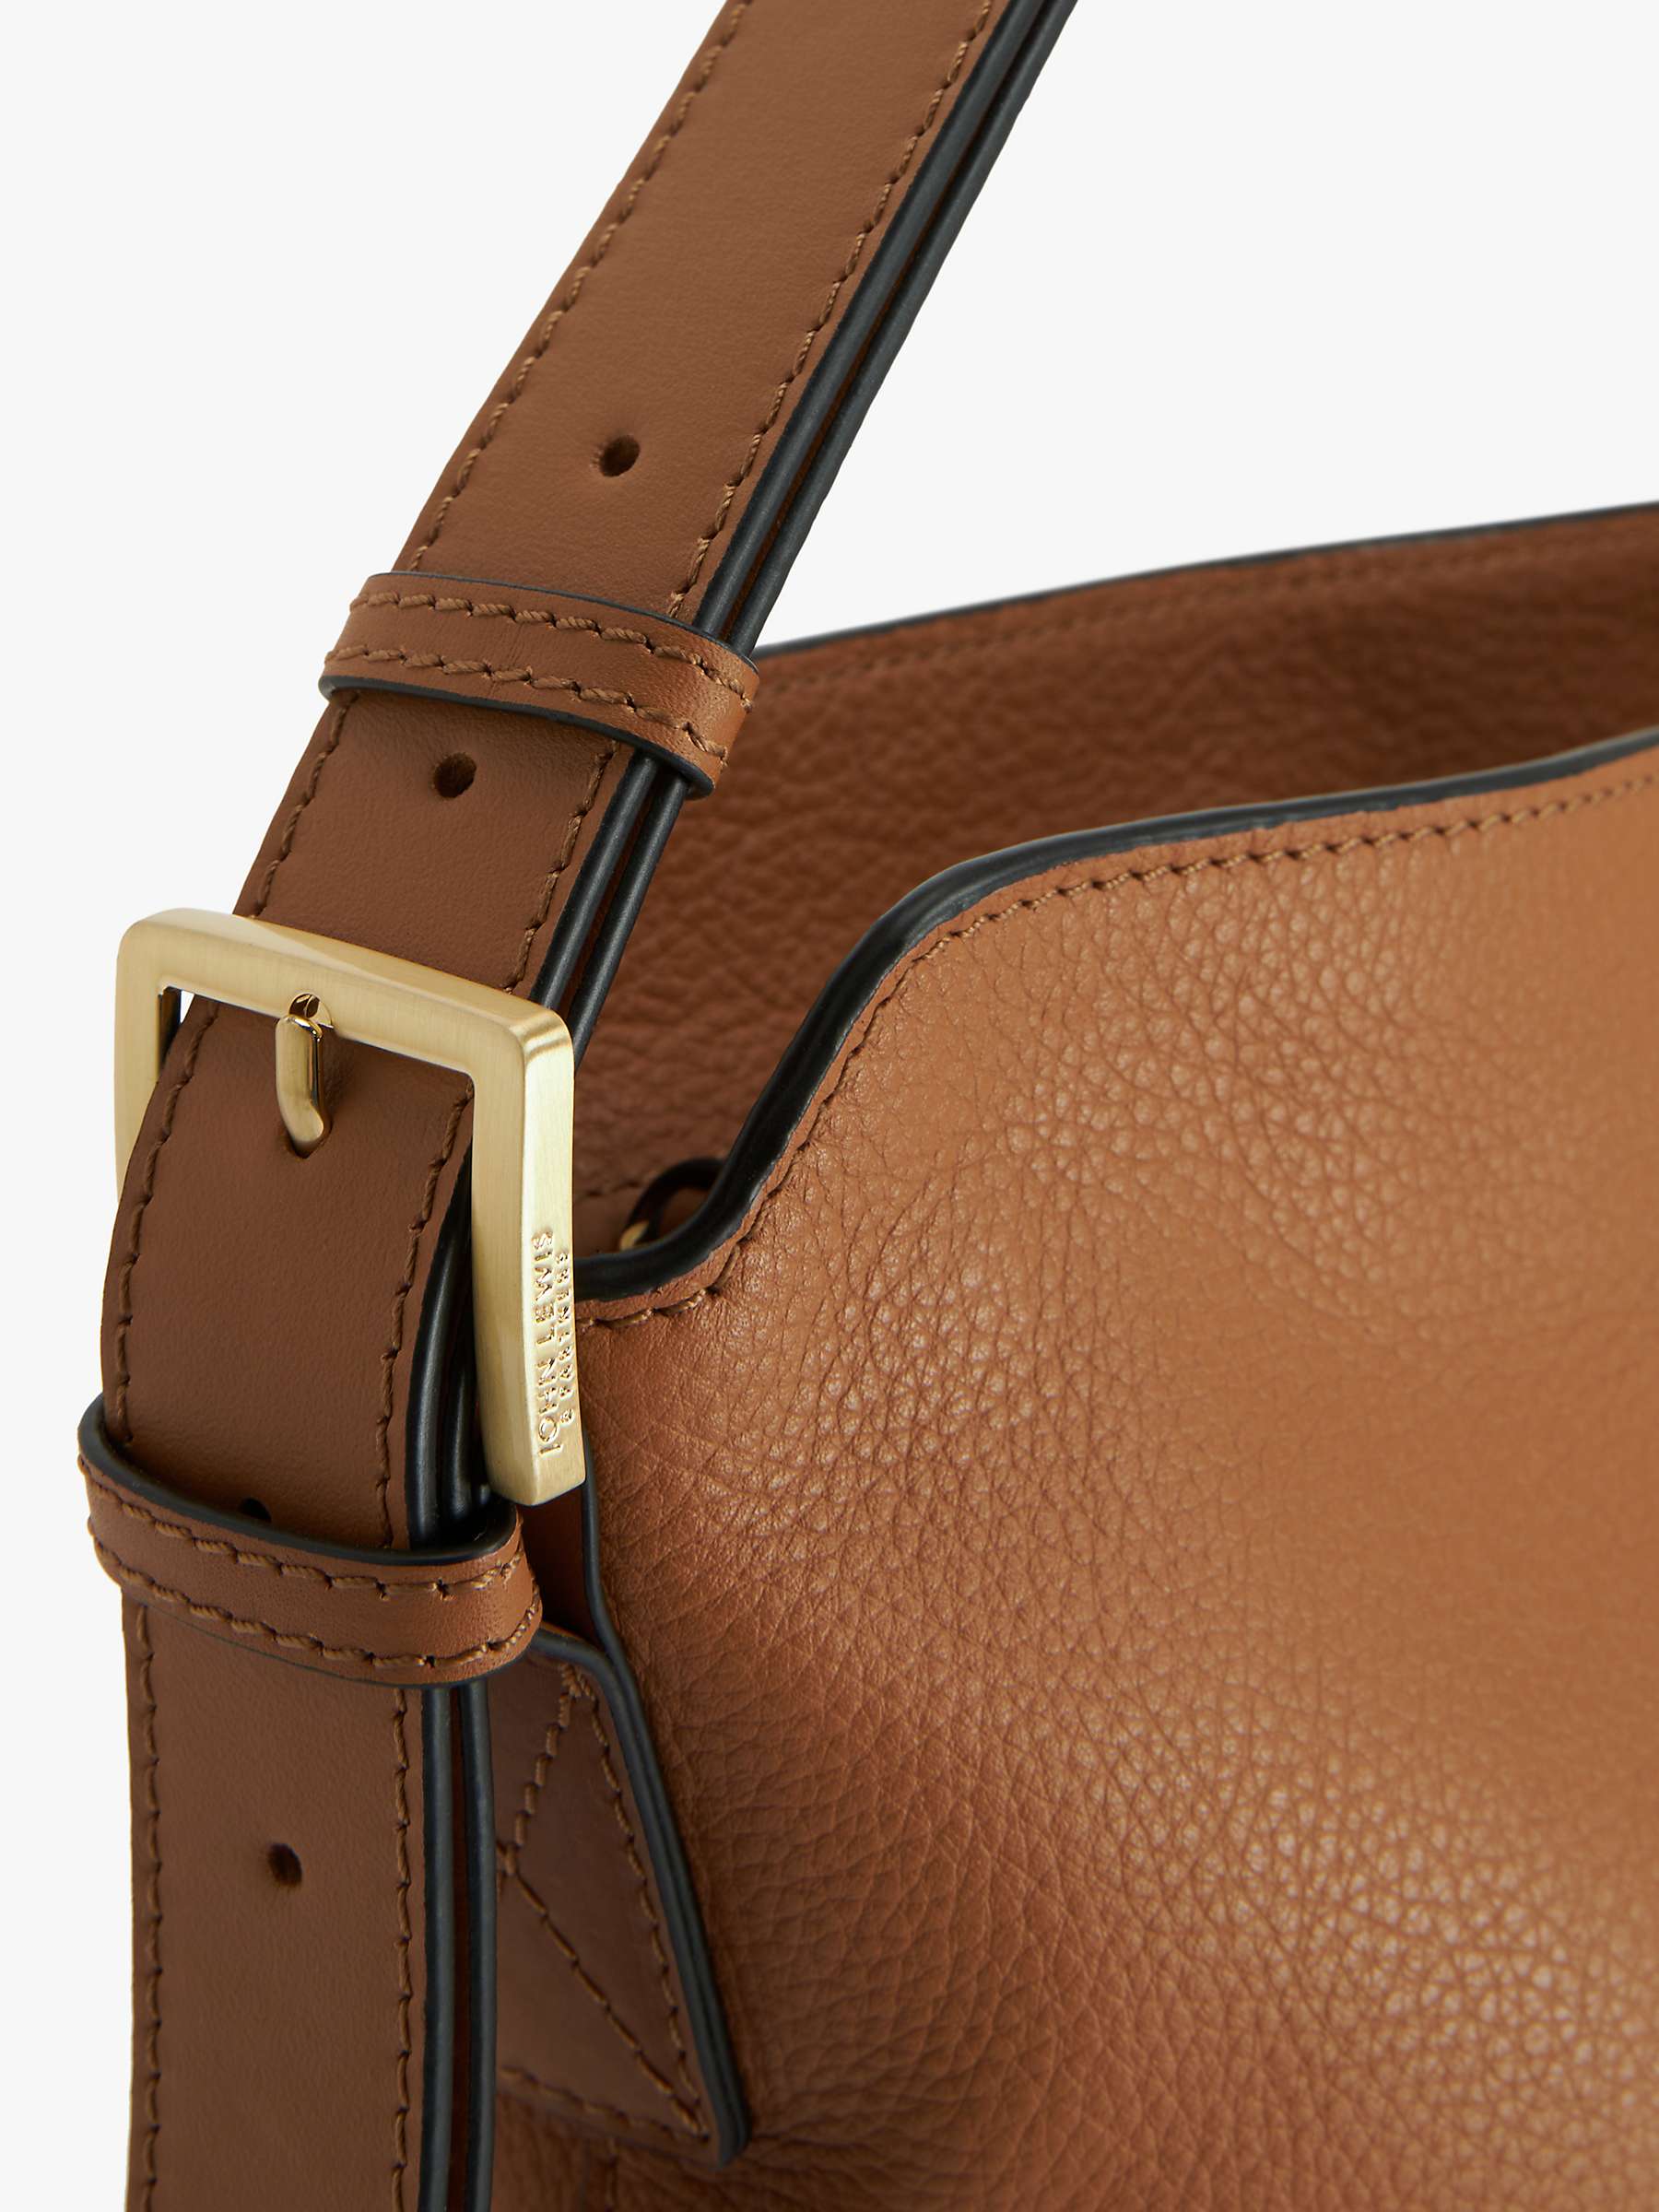 Buy John Lewis Leather Adjustable Shoulder Bag Online at johnlewis.com